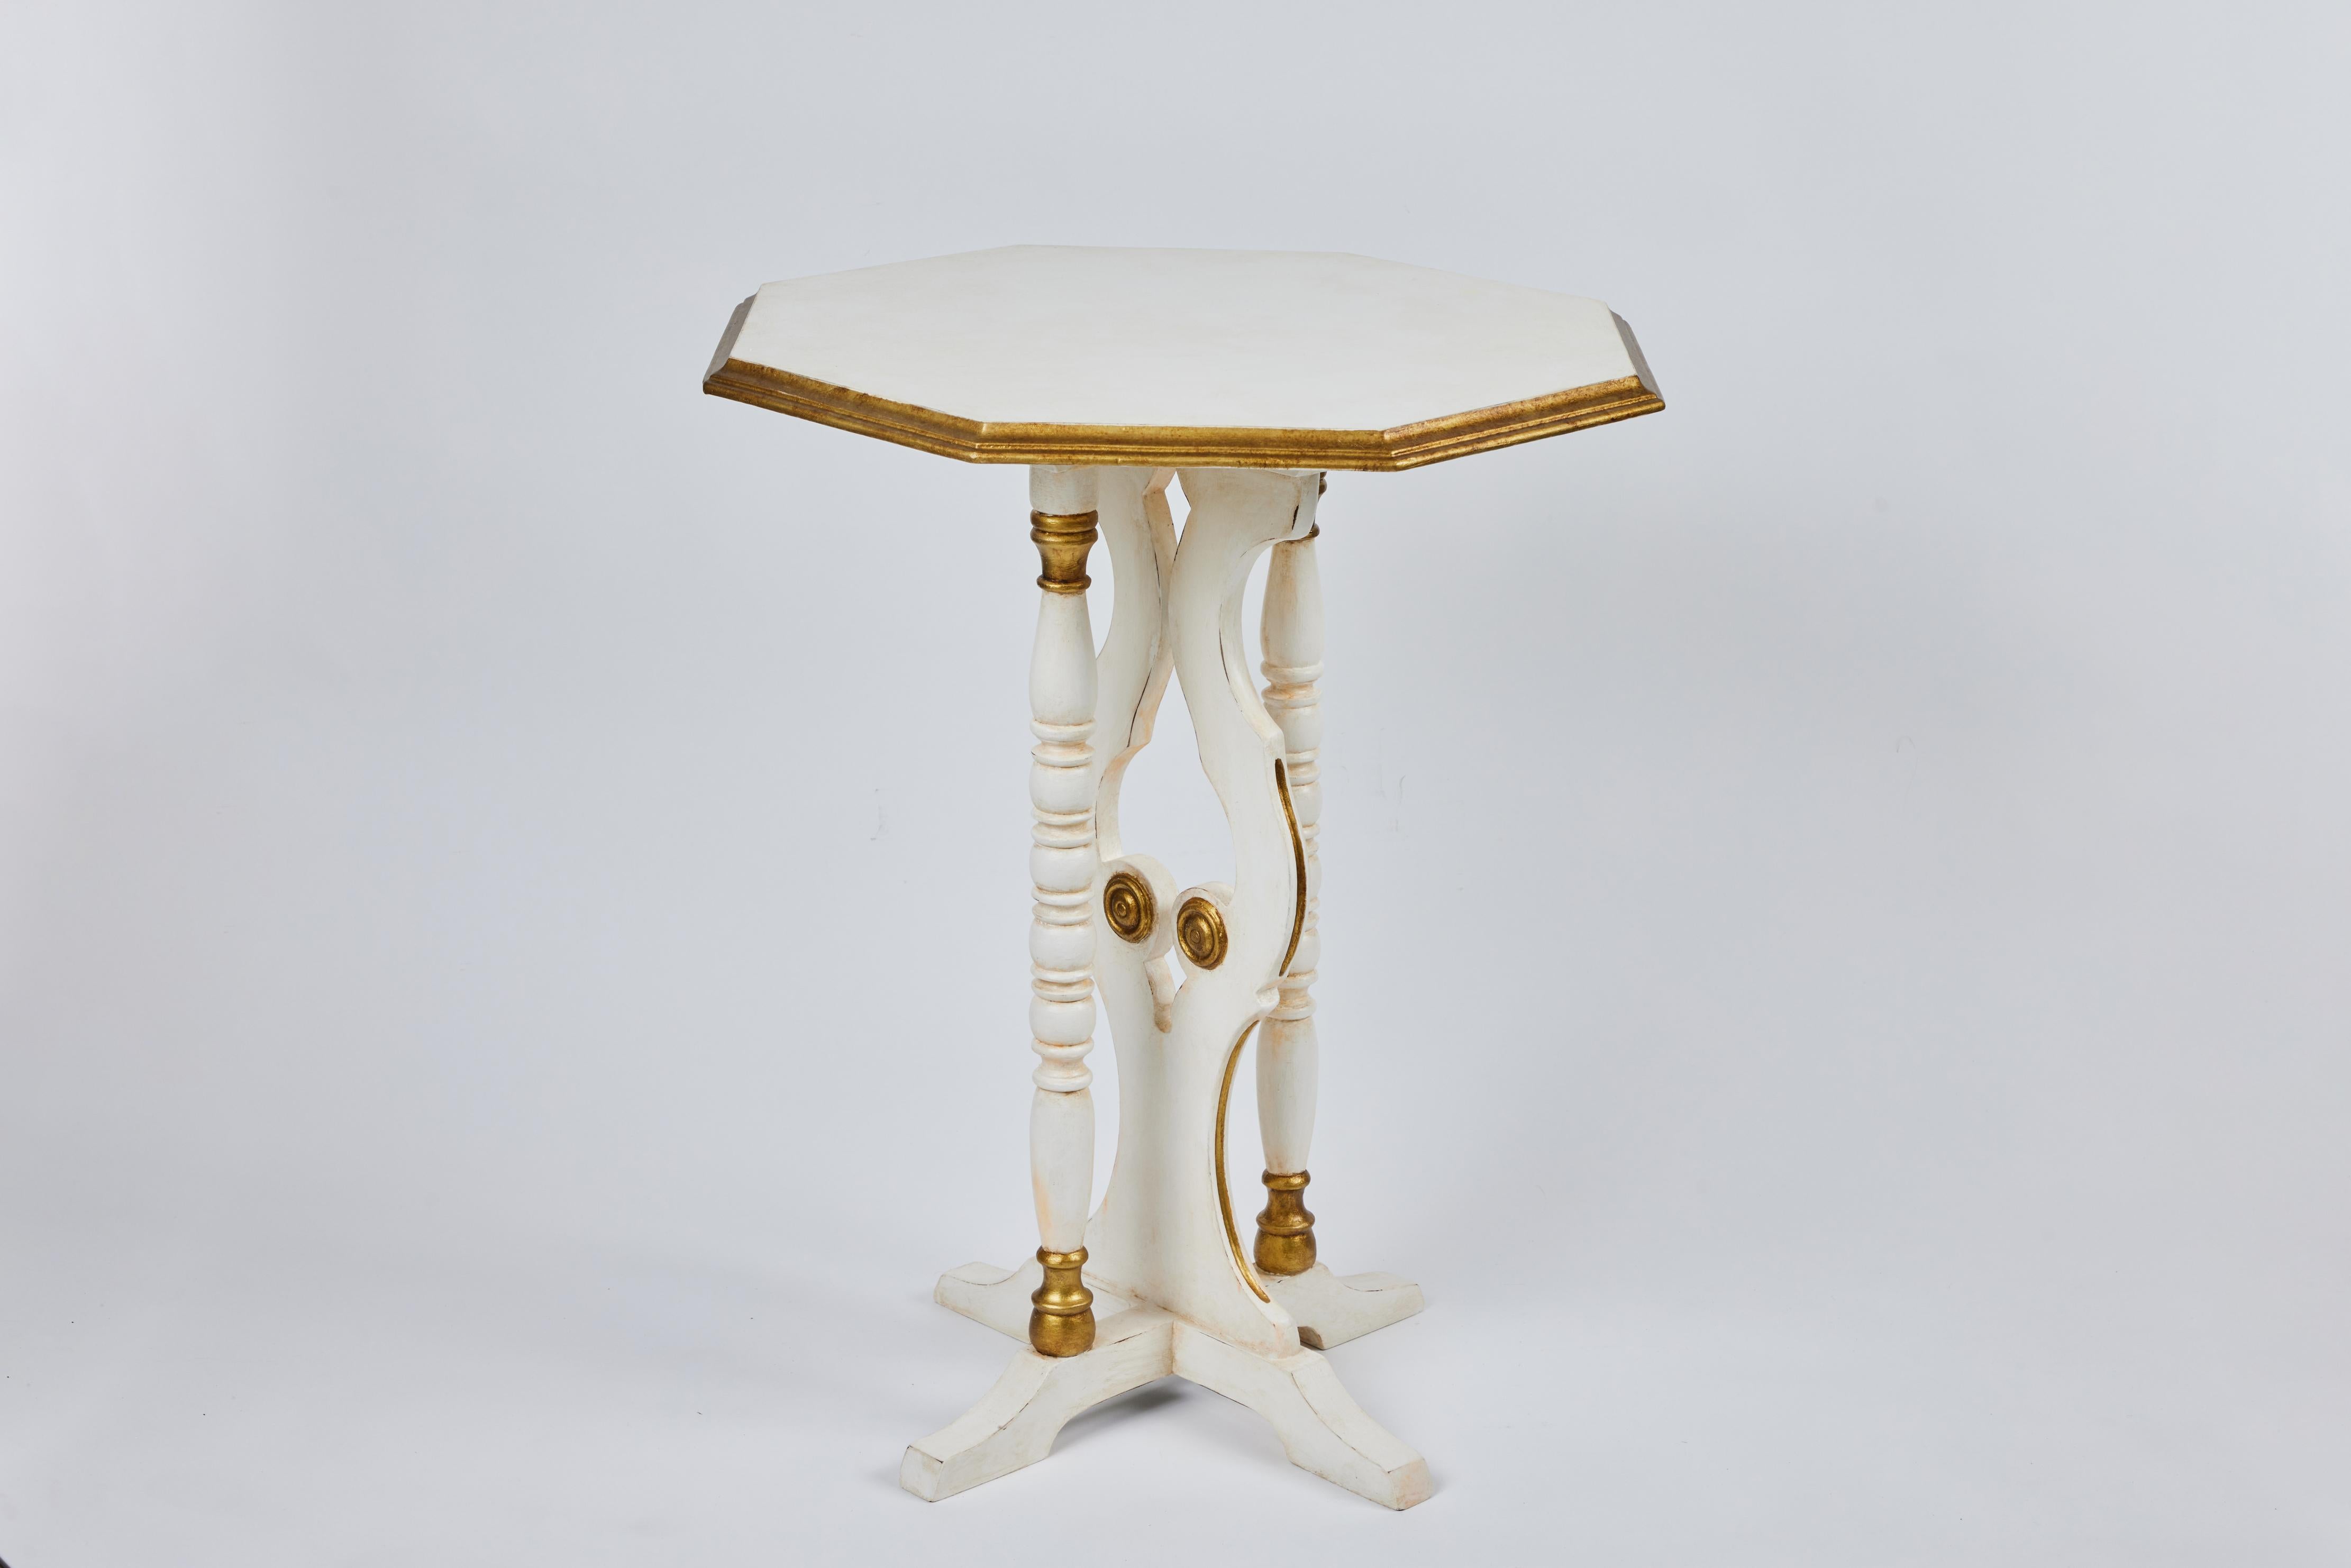 Petite table d'appoint vintage octogonale avec base à pieds et pieds tournés. Nouvellement peint en blanc antique avec des détails en or antique.

Mesures : 20,25